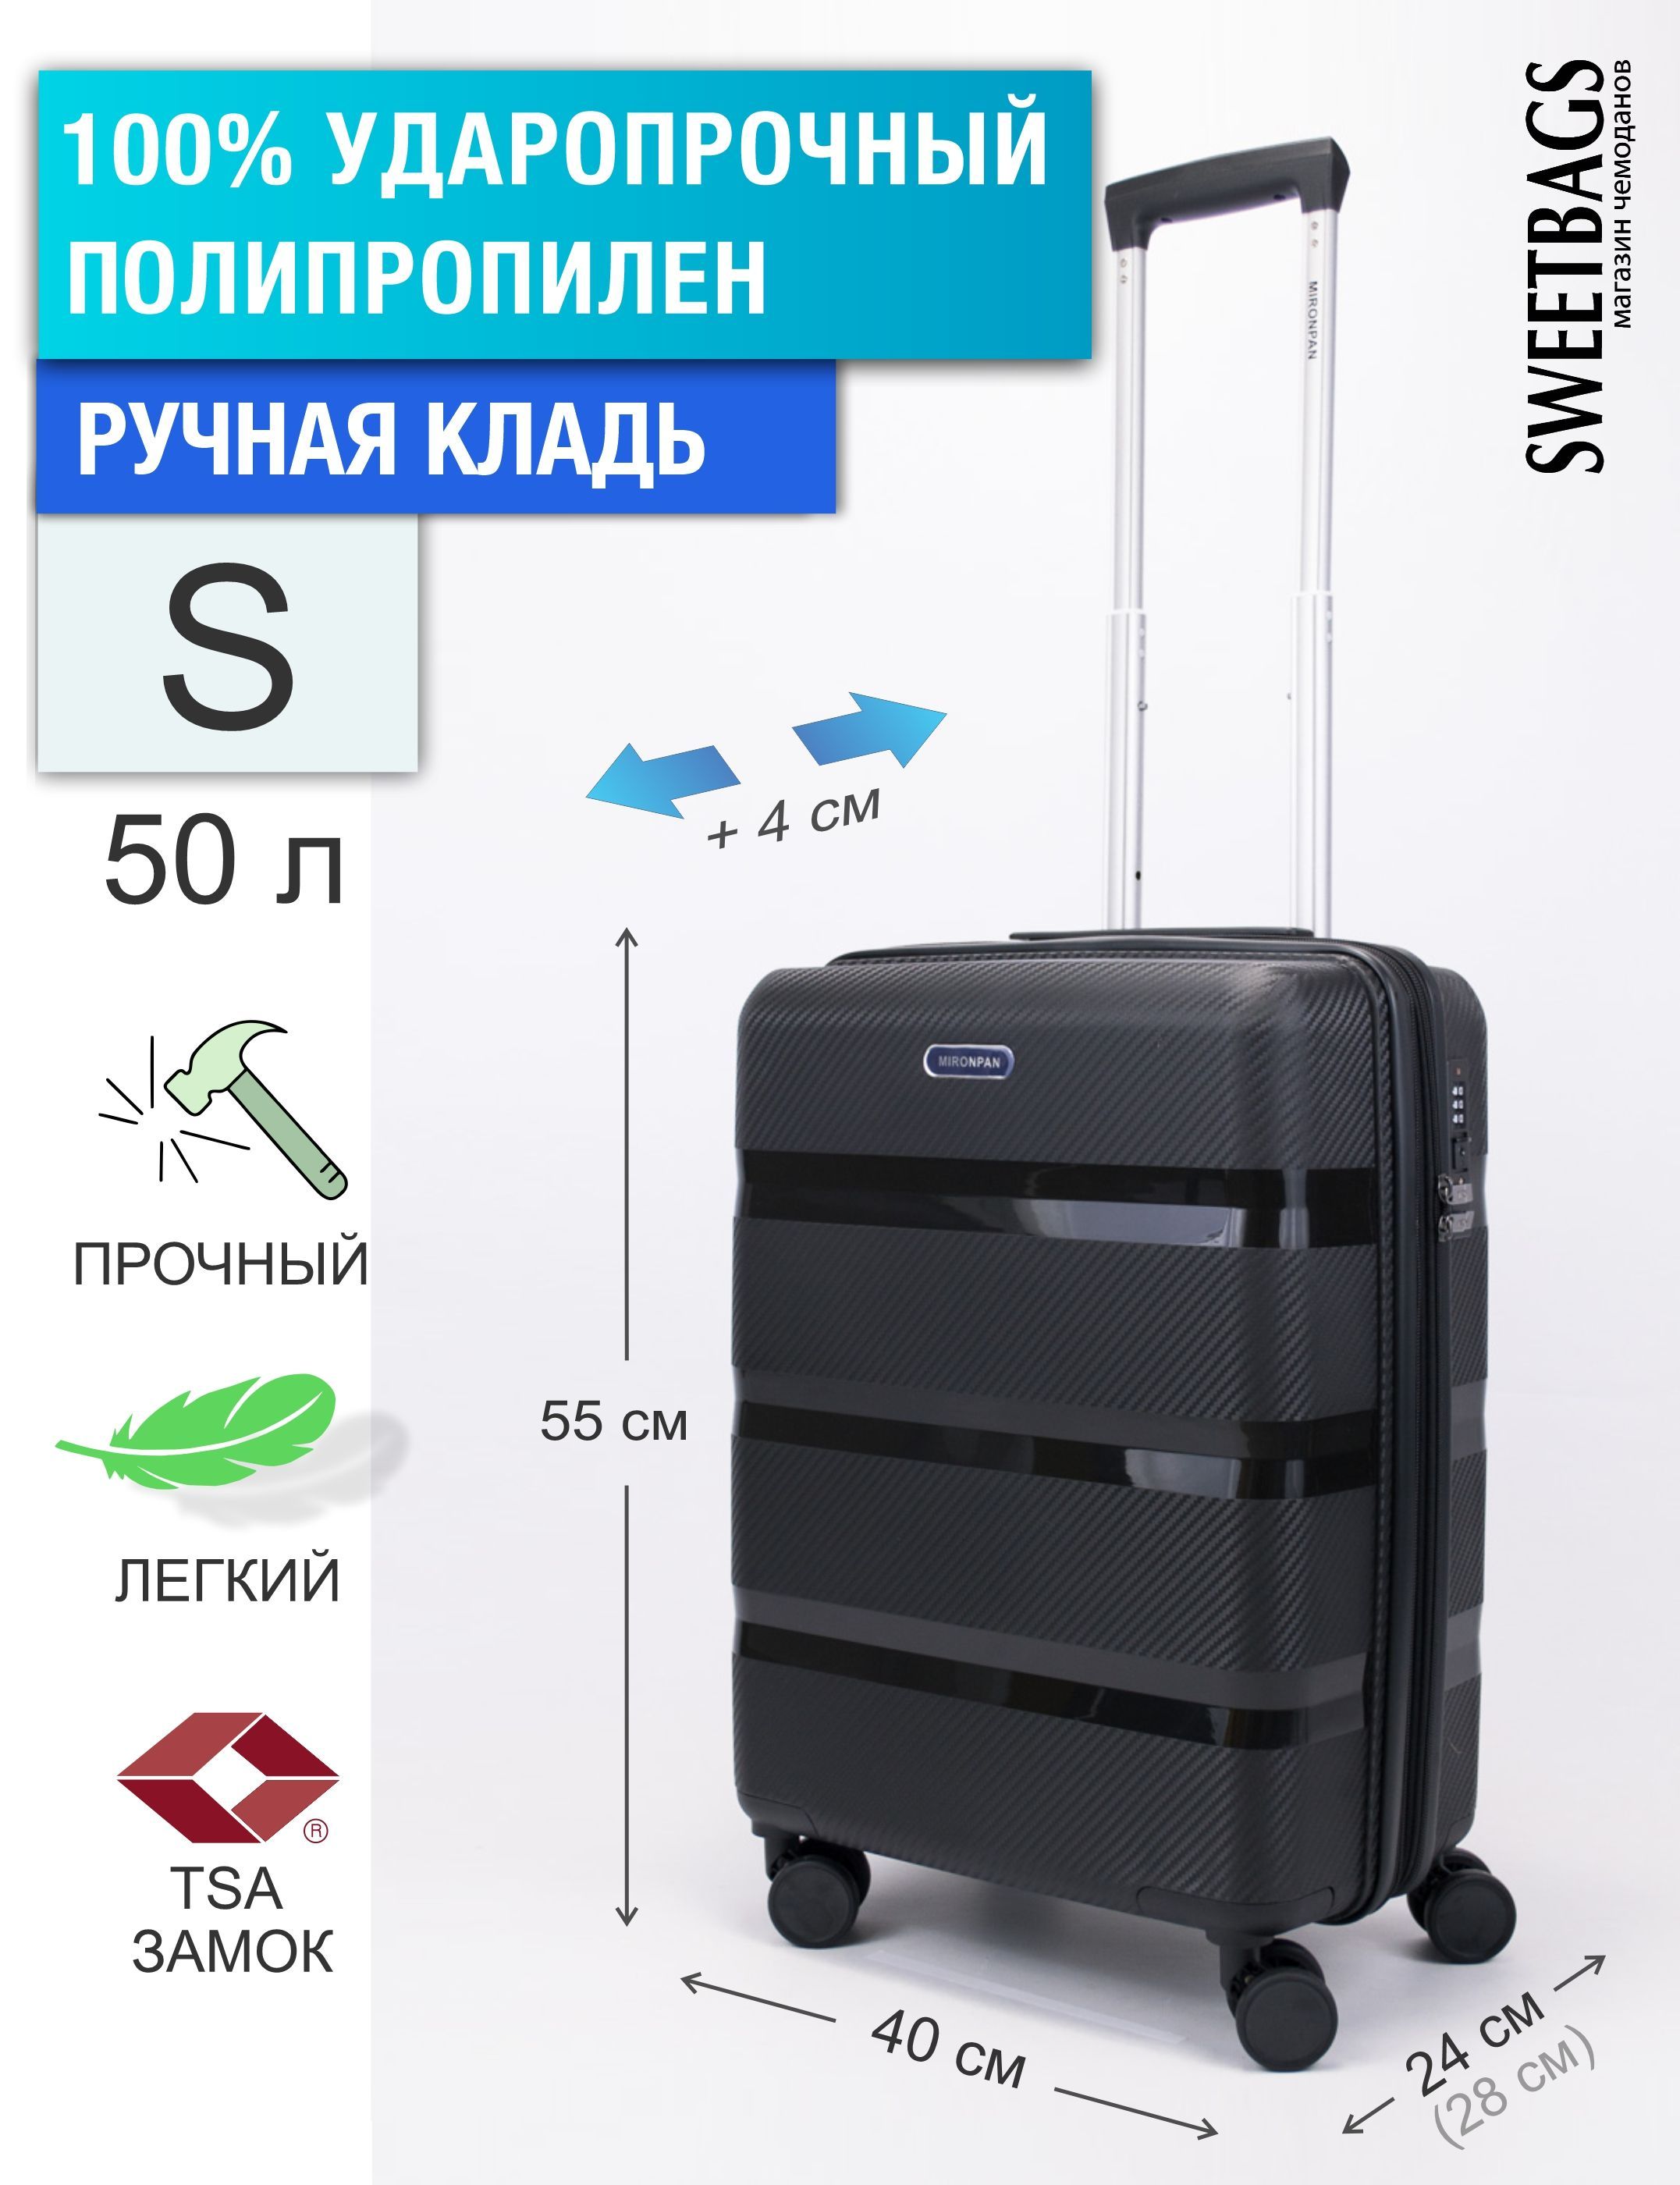 Размер маленького чемодана для ручной